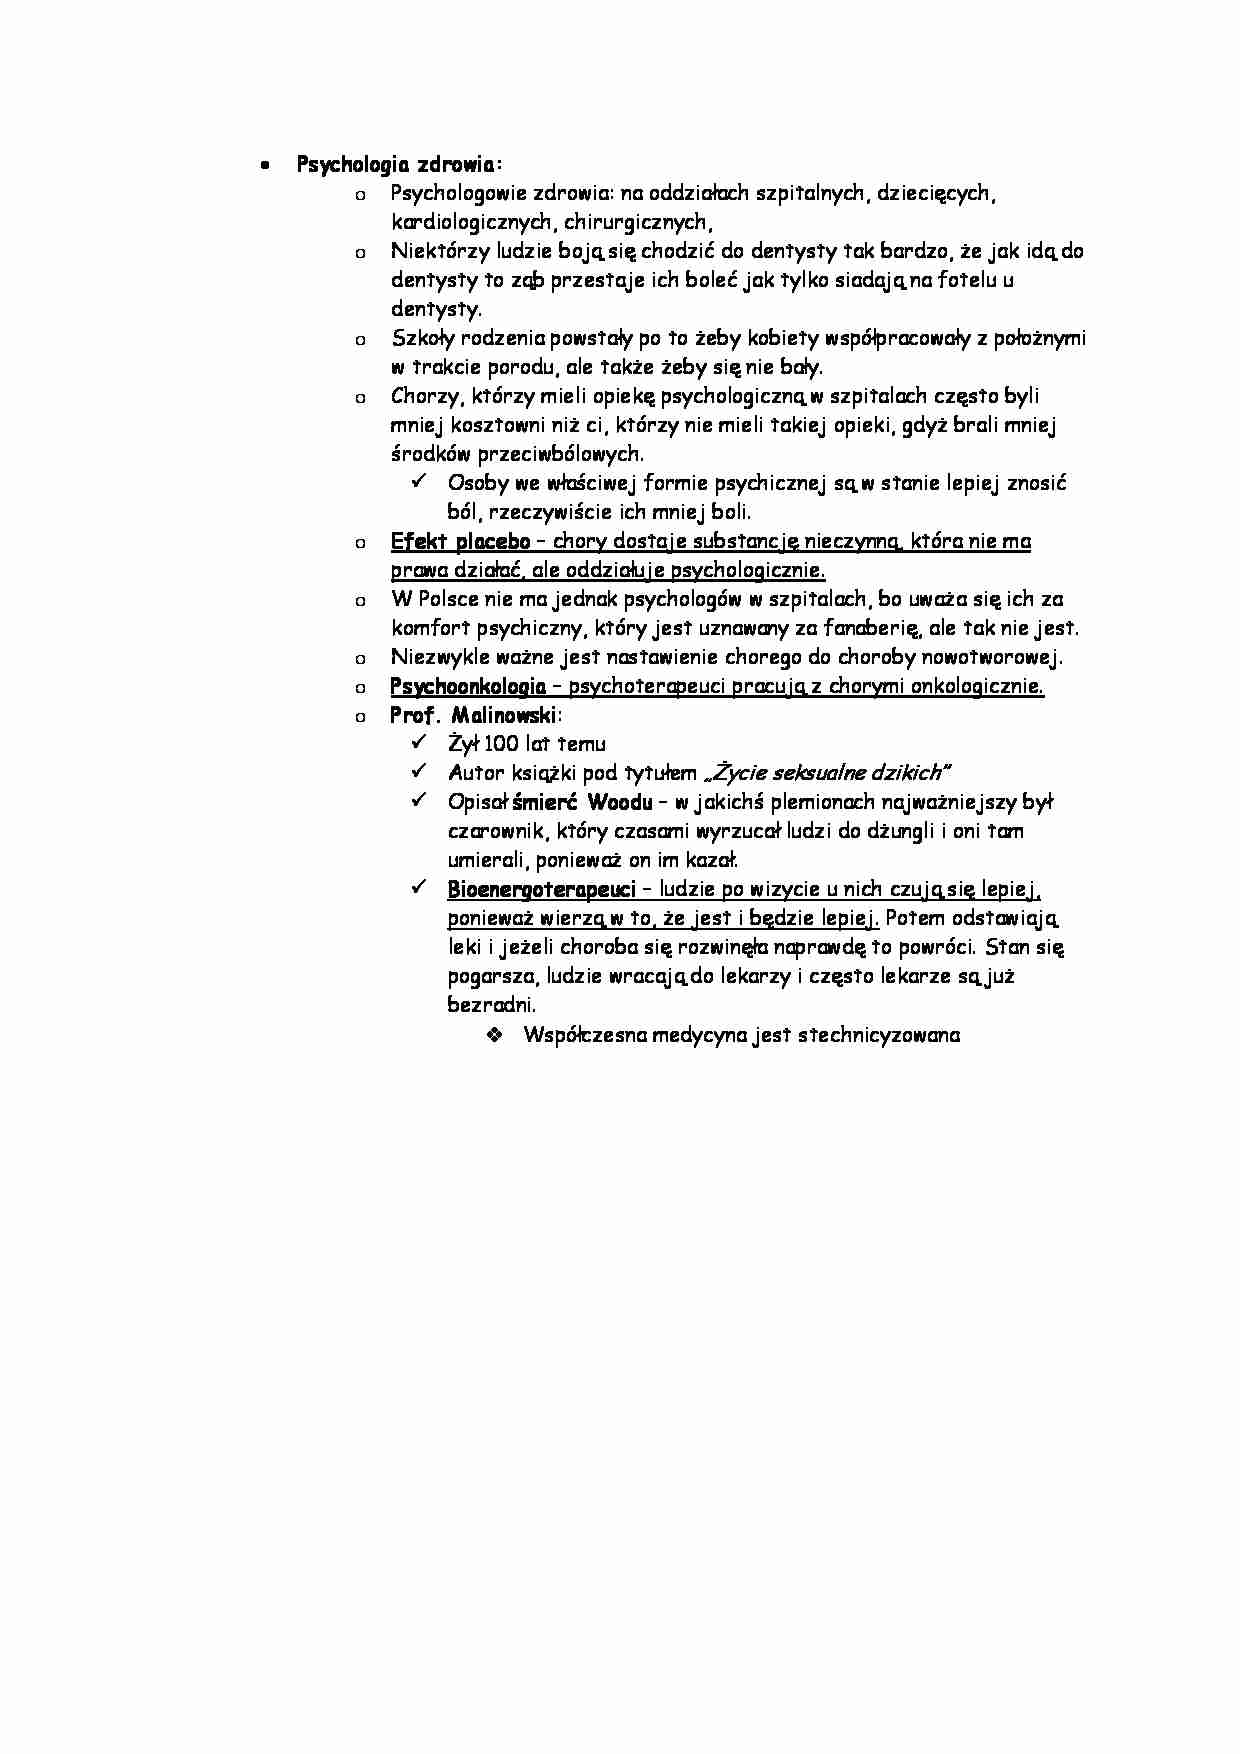 Psychologia - psychologia zdrowia - strona 1